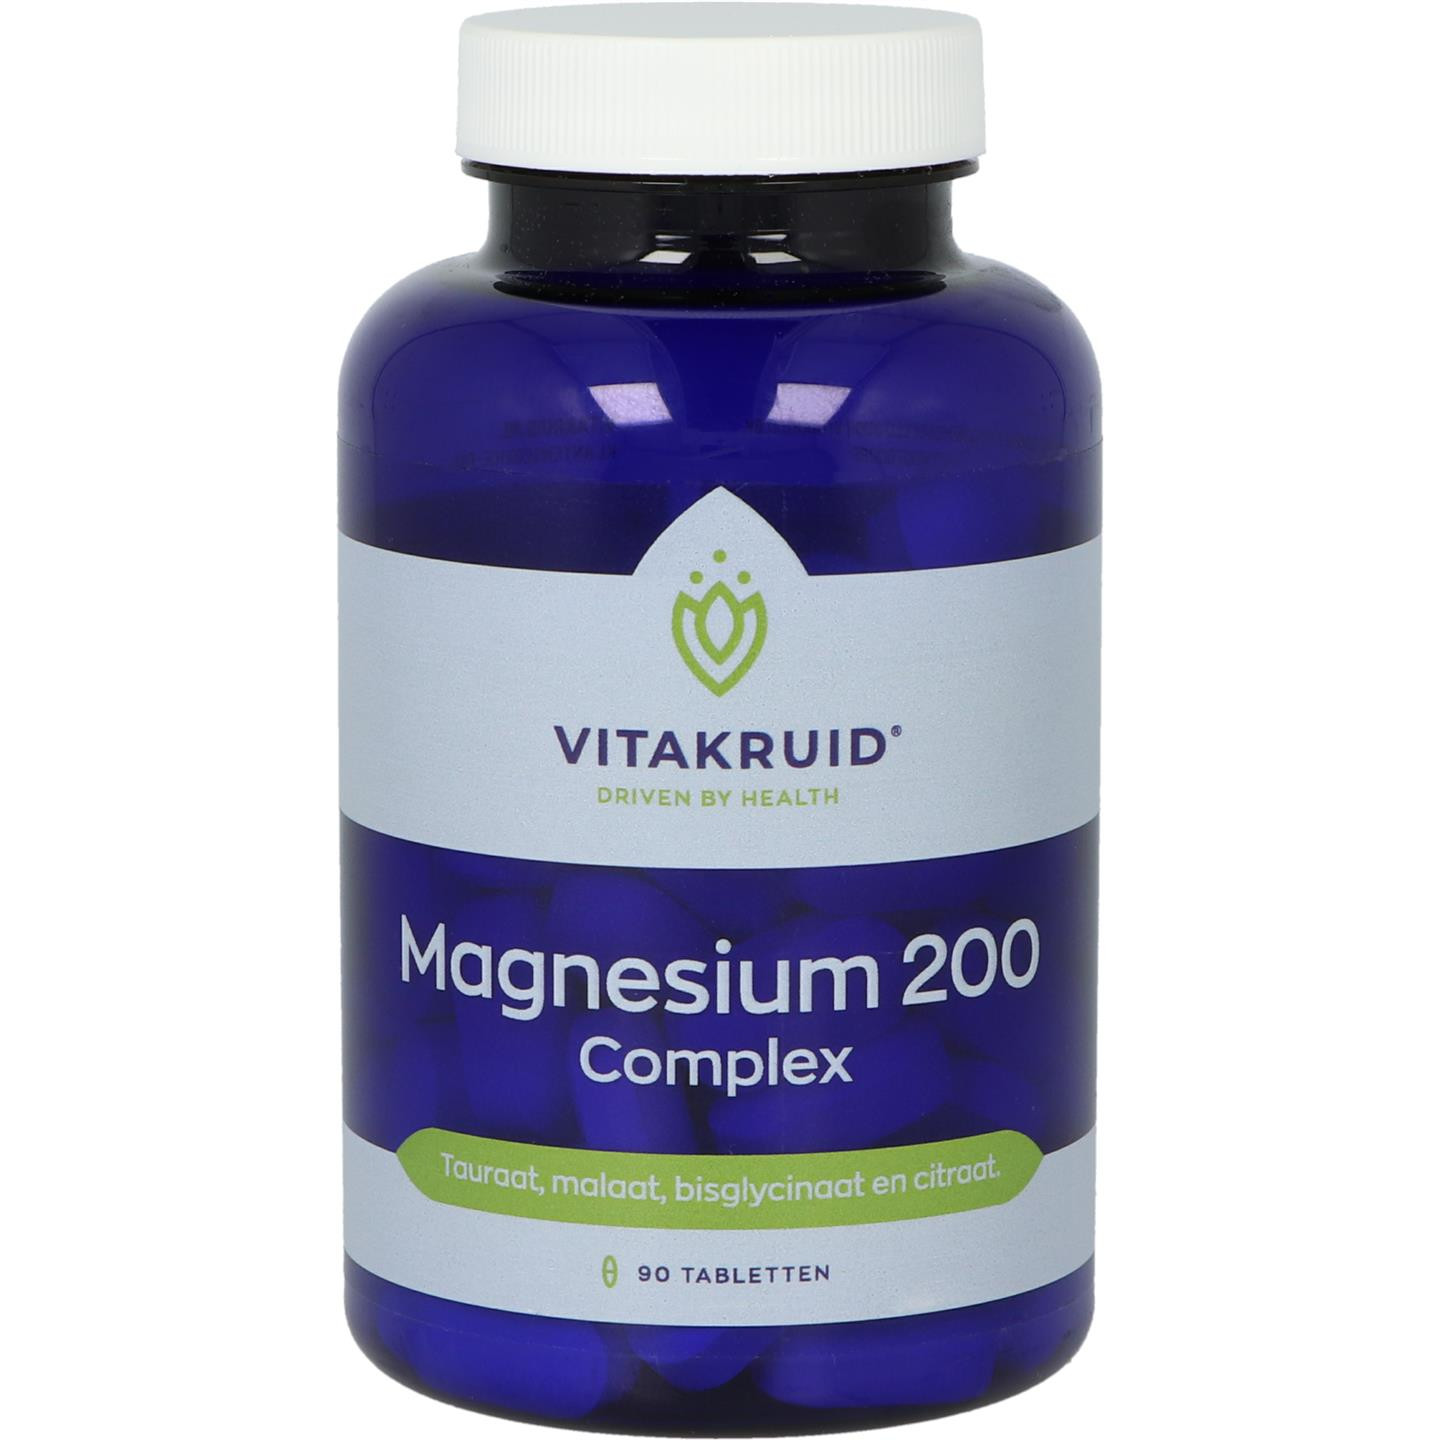 Magnesium 200 complex